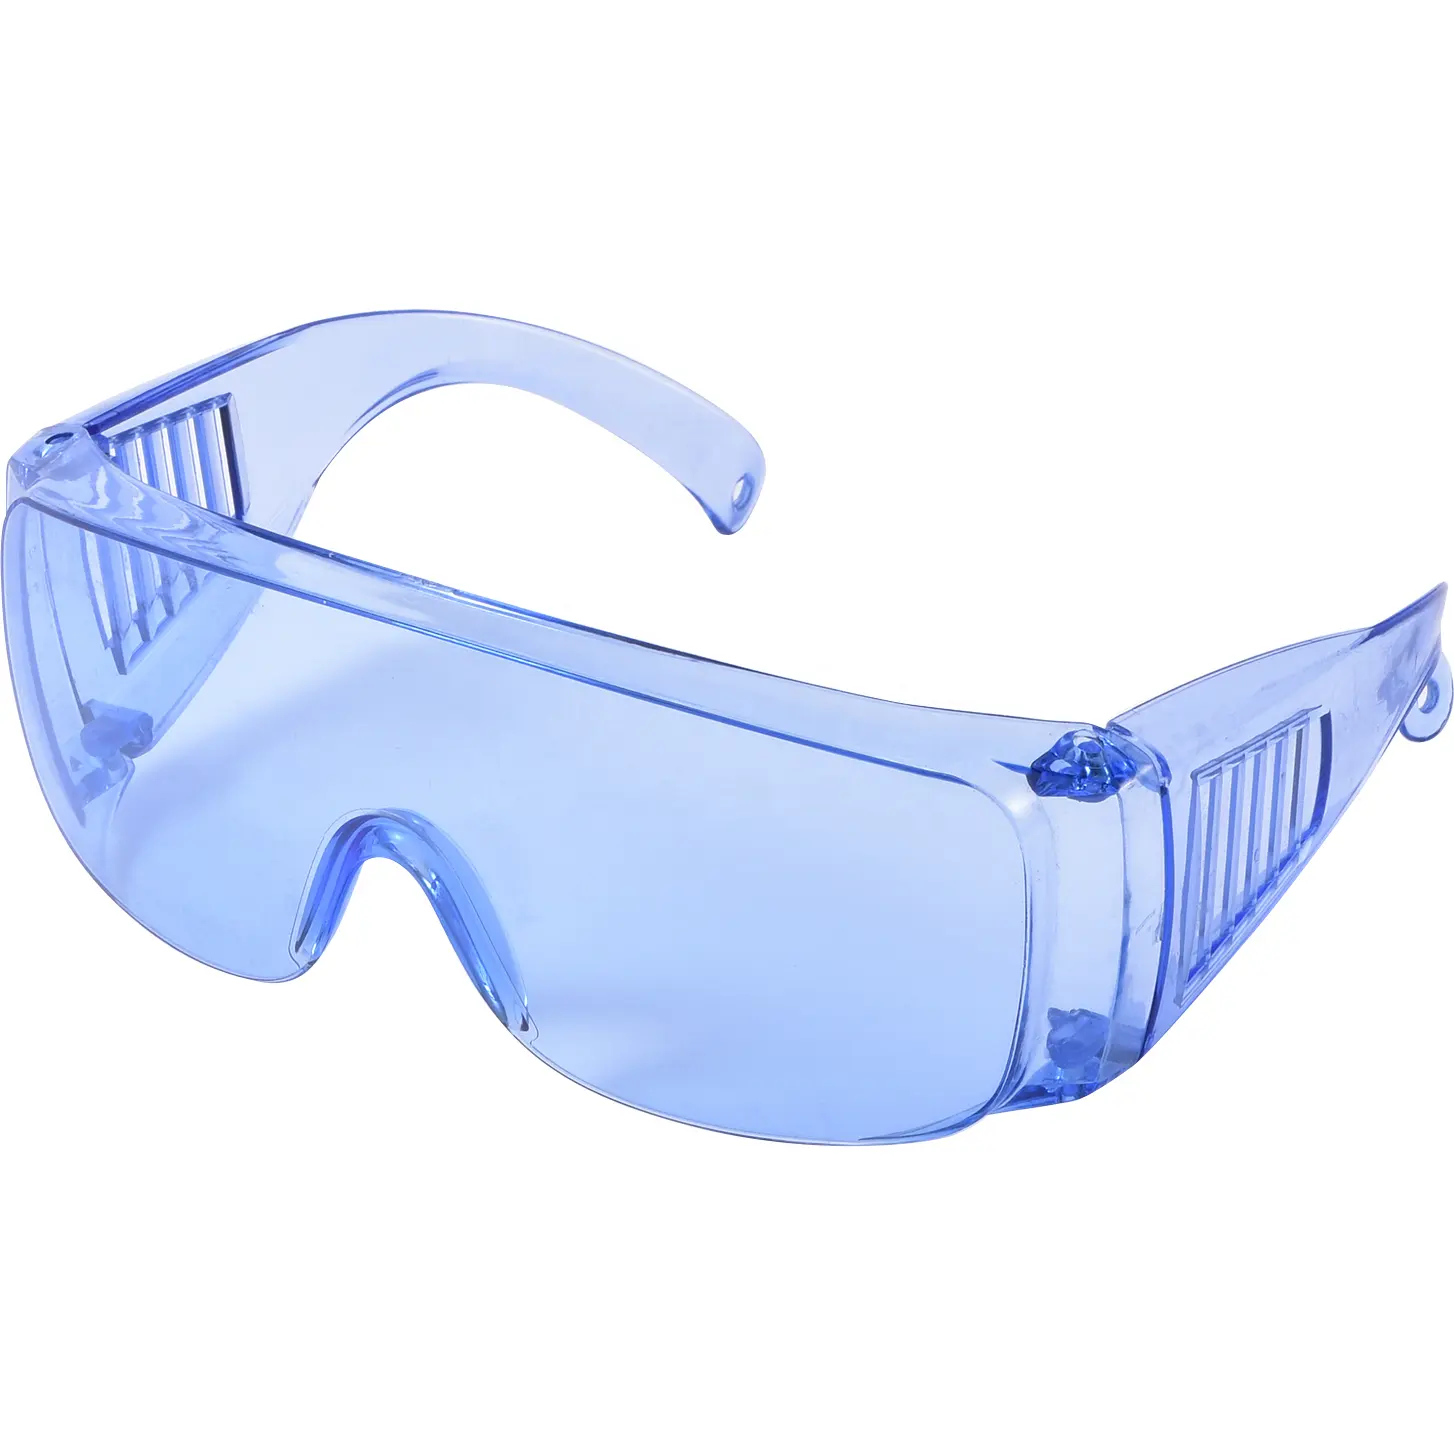 Fabriek Direct Chemisch Spat Schokbestendig Duurzaam Anti-Fog Oogbescherming Beschermende Veiligheidsbril Met Pc-Lens